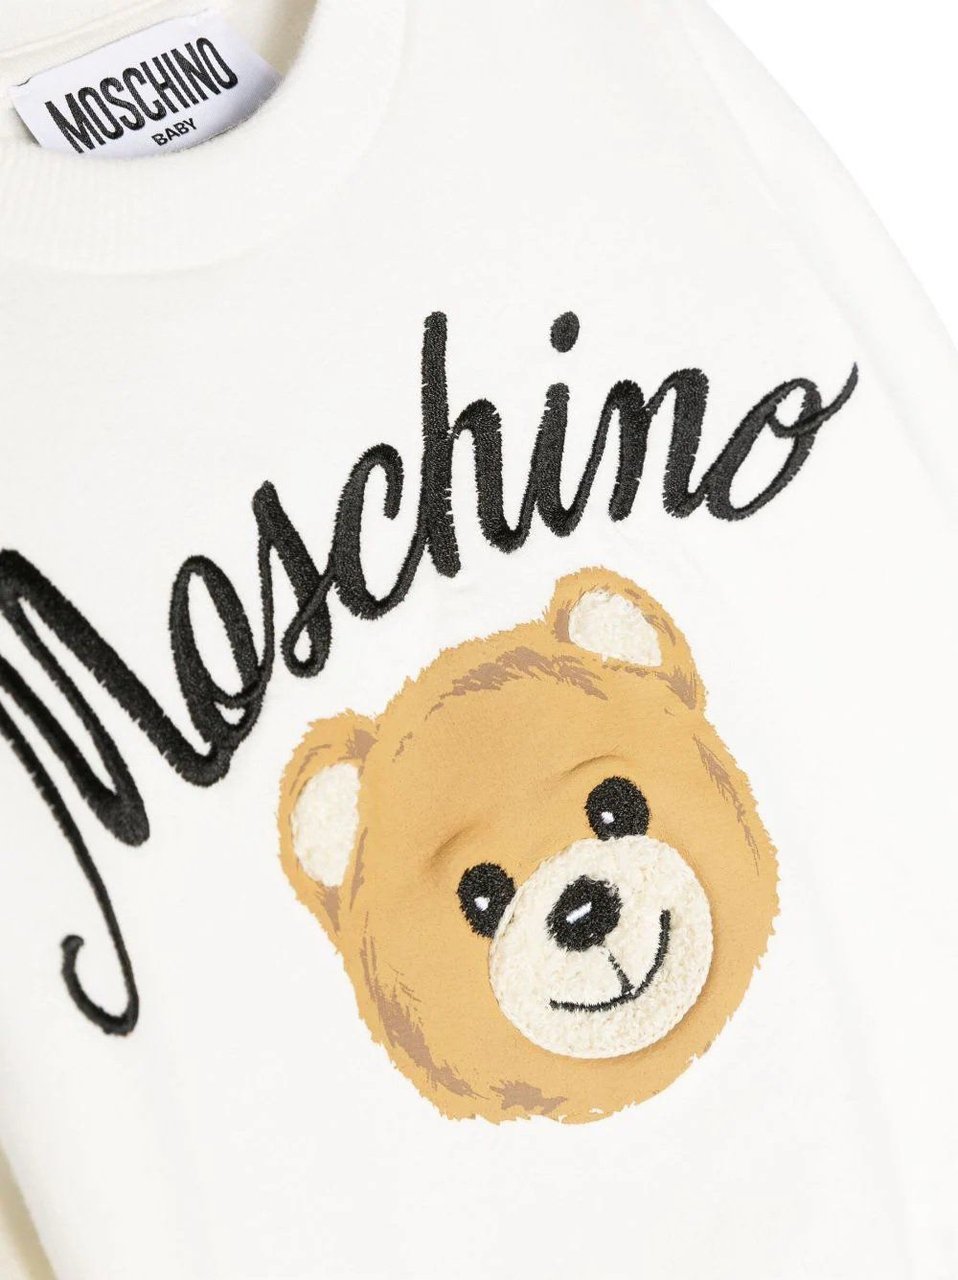 Moschino Logo Sweatshirt Wit